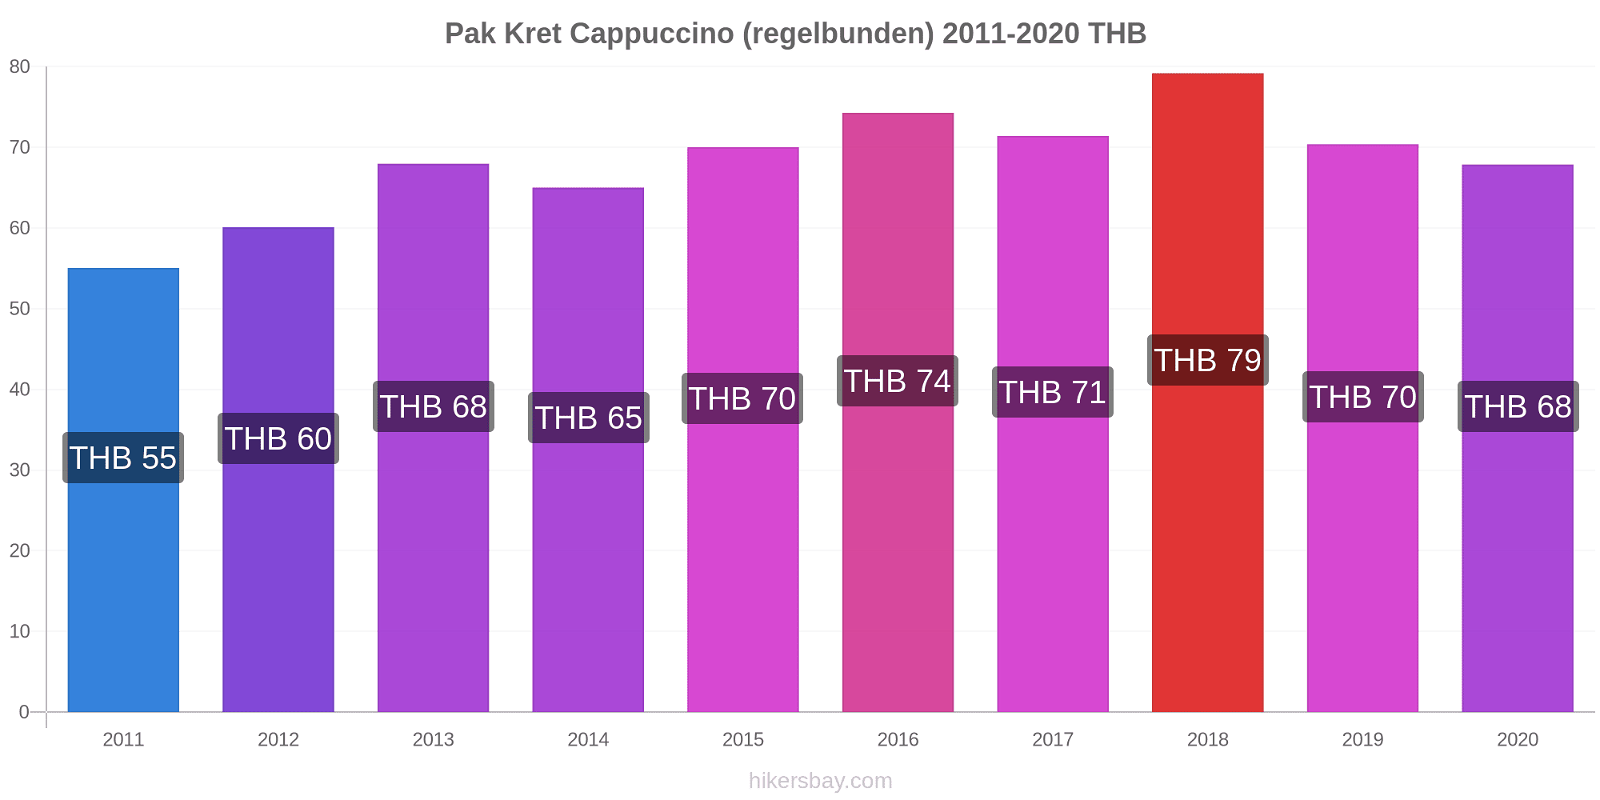 Pak Kret prisförändringar Cappuccino (regelbunden) hikersbay.com